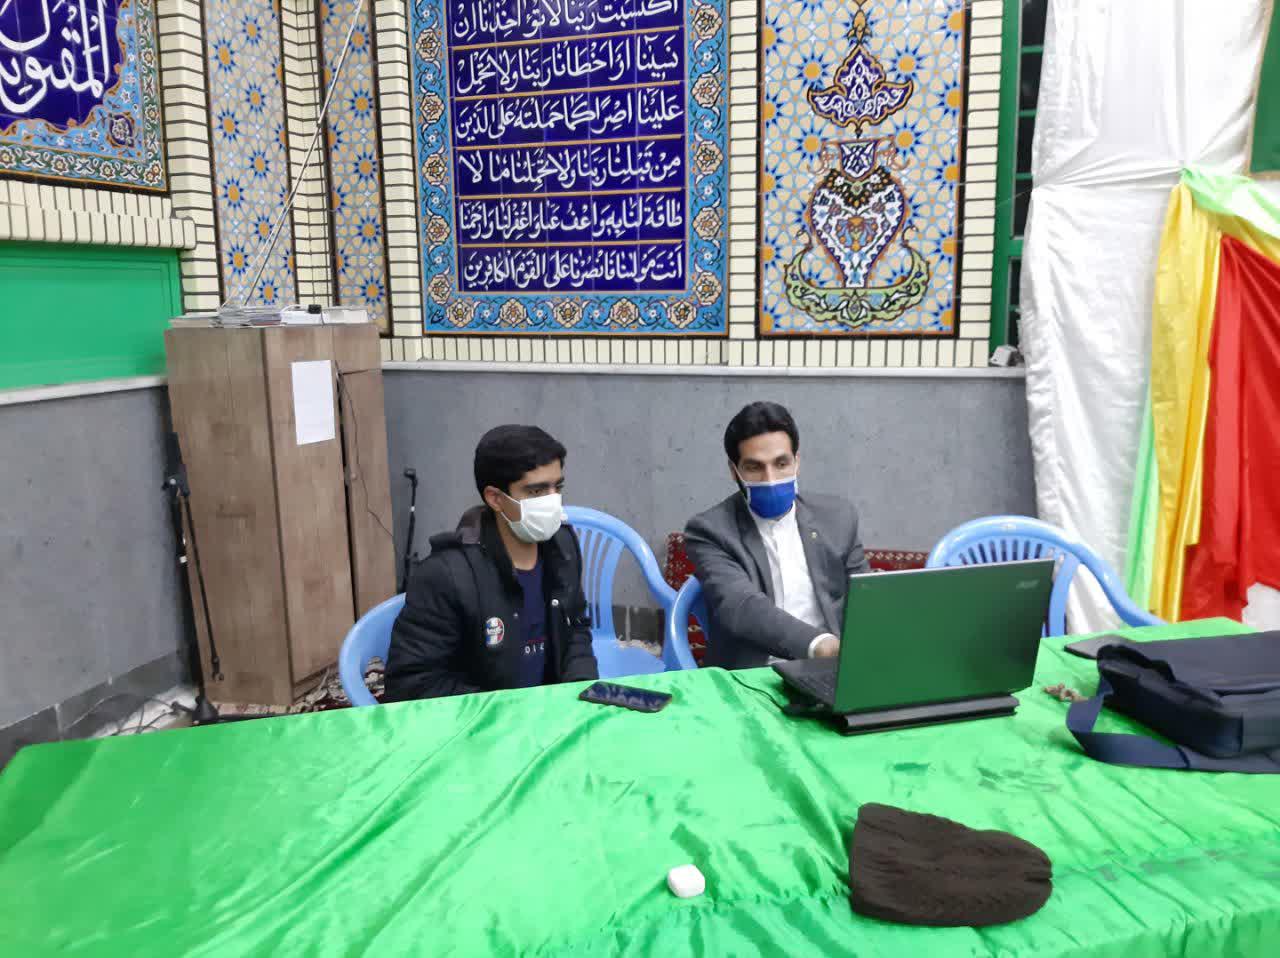 آموزش بارگزاری اطلاعات در سامانه بچه های مسجد در مسجد جوادالائمه(ع) برگزار شد.